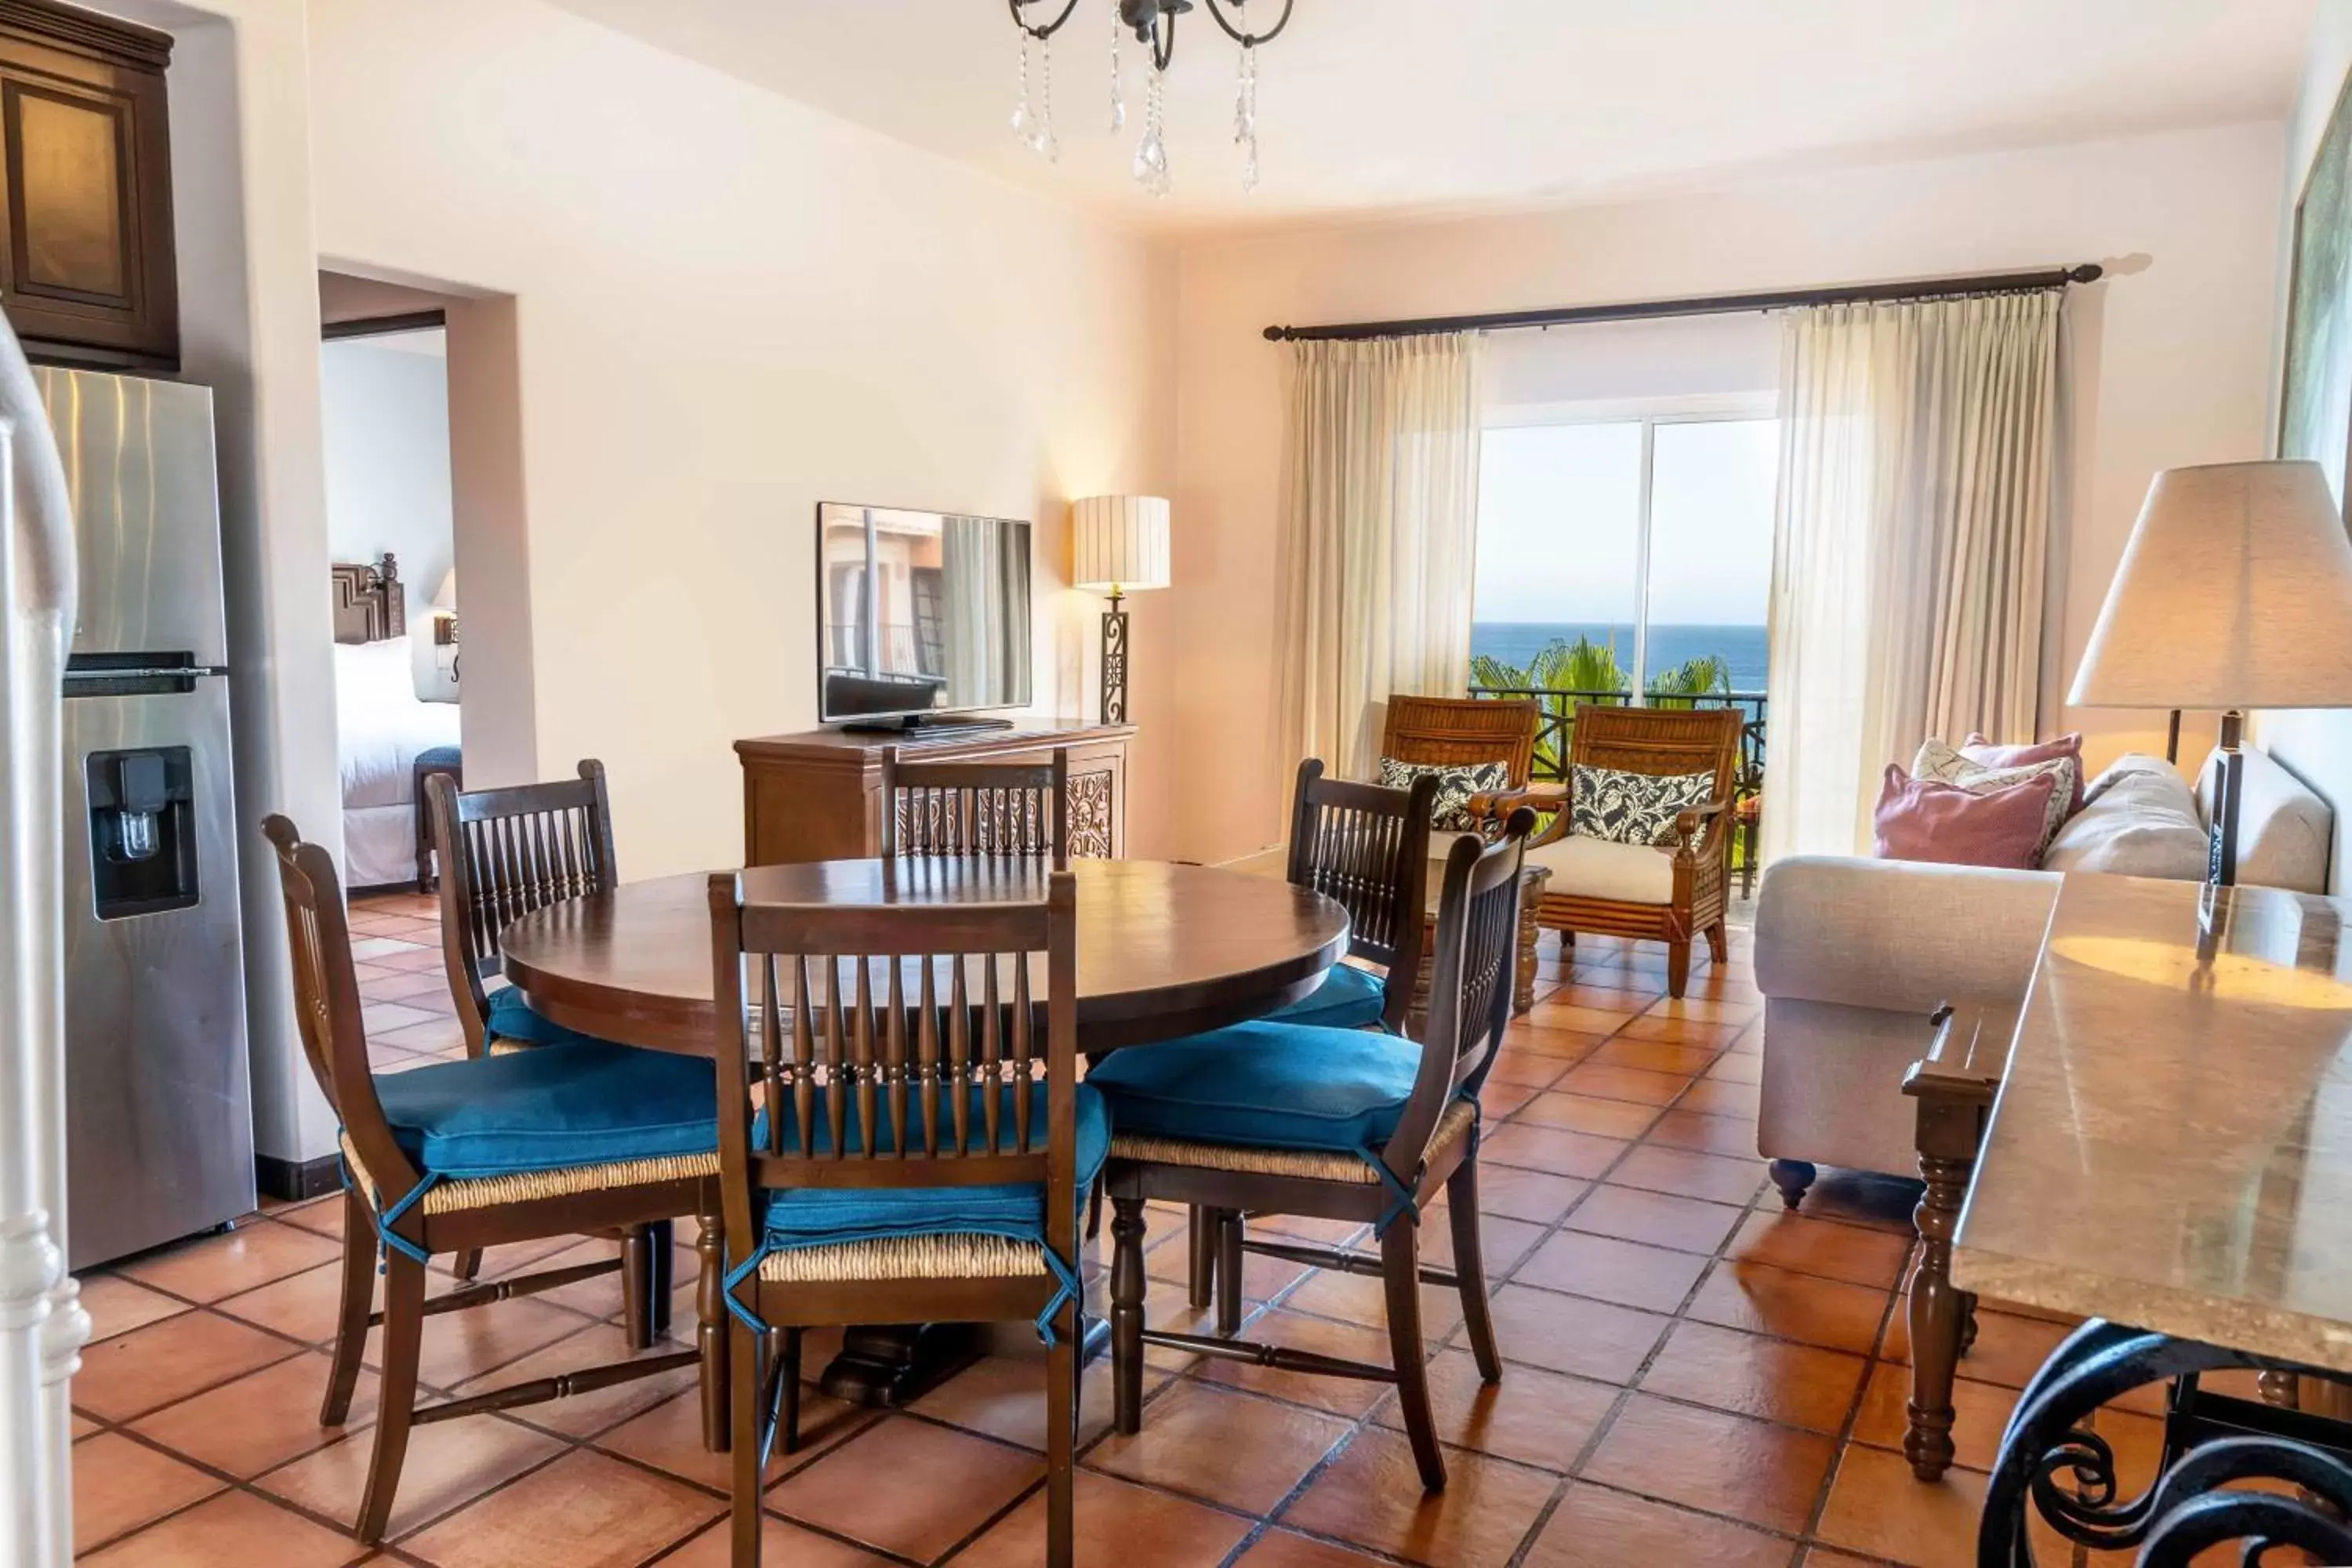 Photo of the whole room, Seating Area in Hacienda del Mar Los Cabos